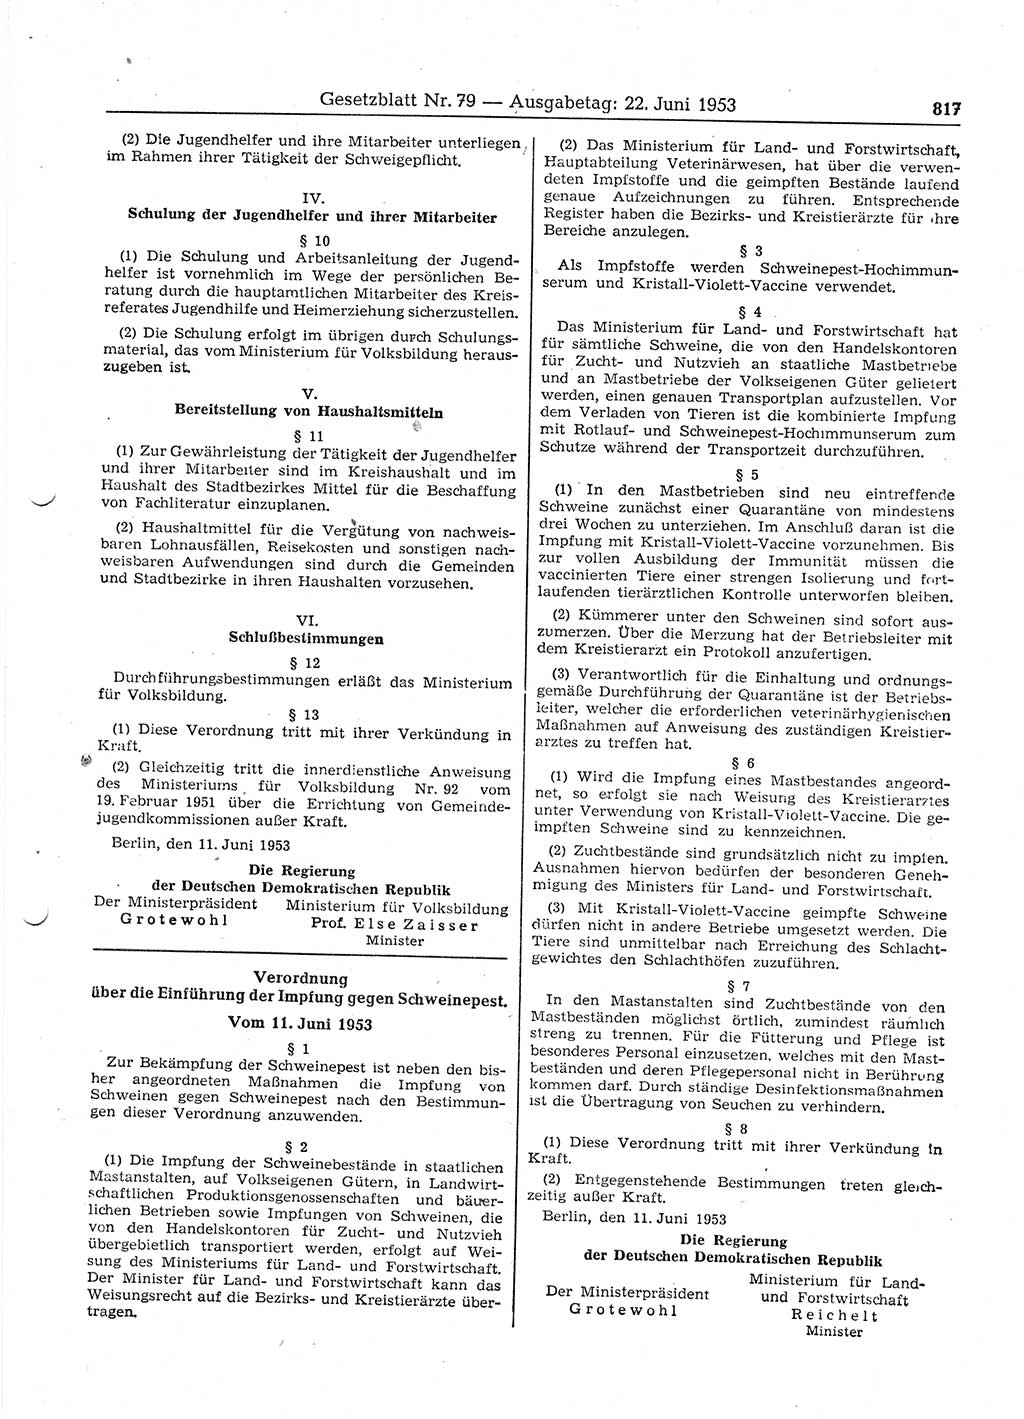 Gesetzblatt (GBl.) der Deutschen Demokratischen Republik (DDR) 1953, Seite 817 (GBl. DDR 1953, S. 817)